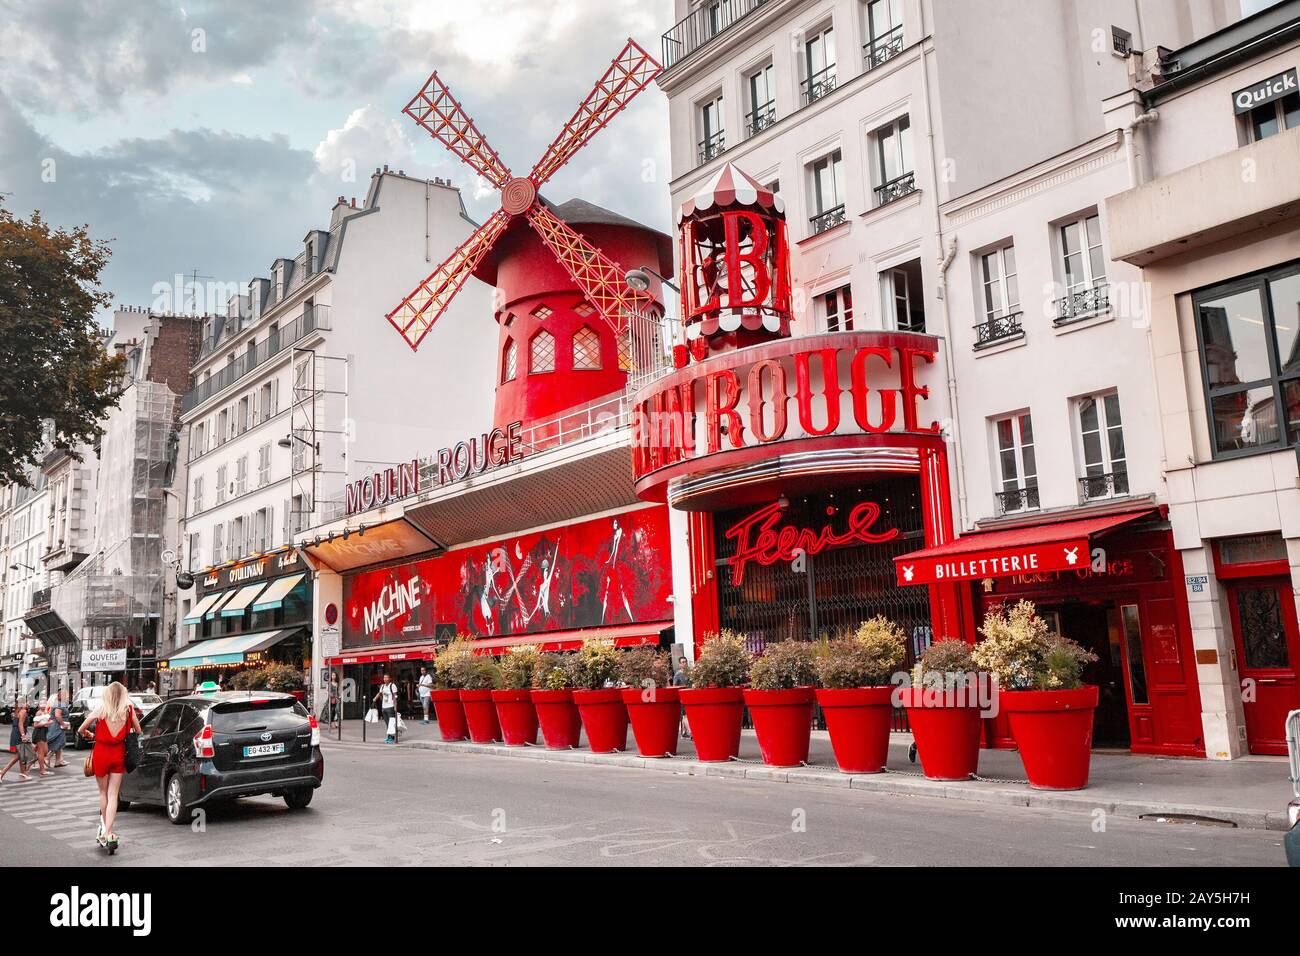 25 July 2019, Paris, France: Famous tourist landmark - Moulin Rouge cabaret exterior view Stock Photo